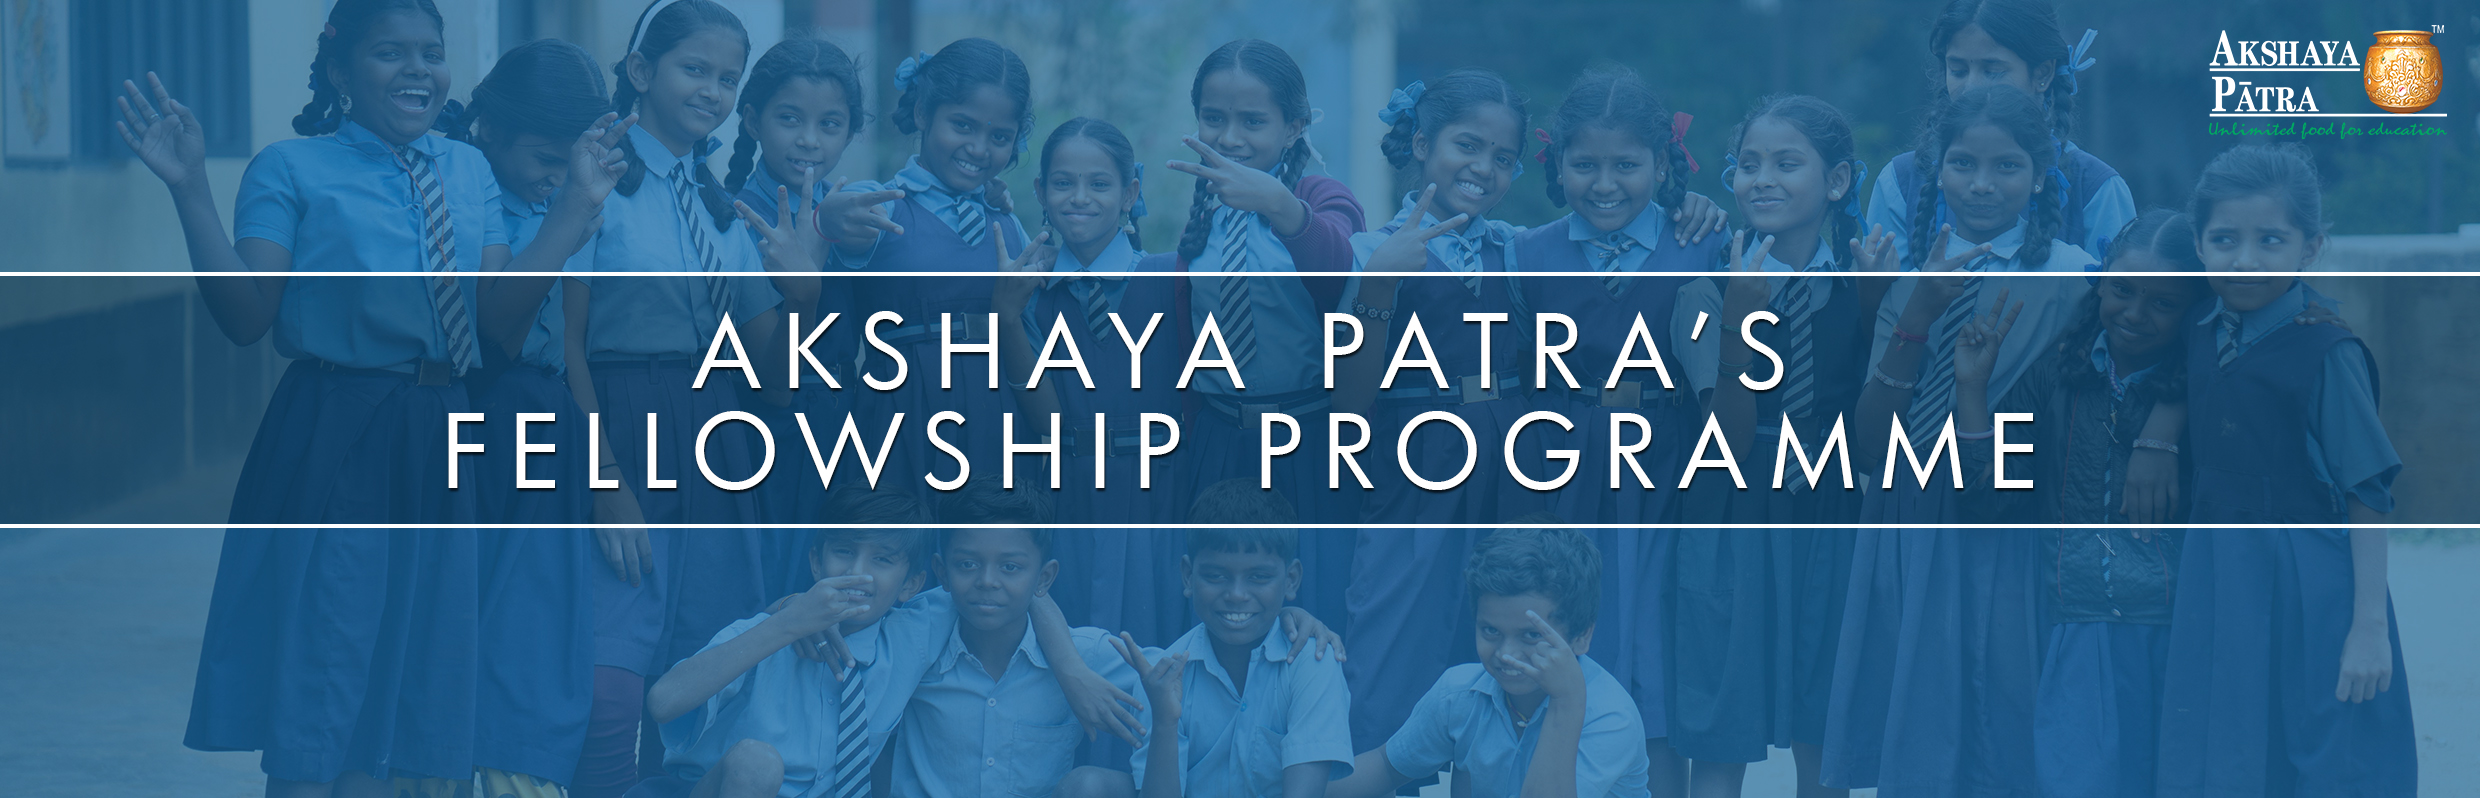 The Akshaya Patra Fellowship